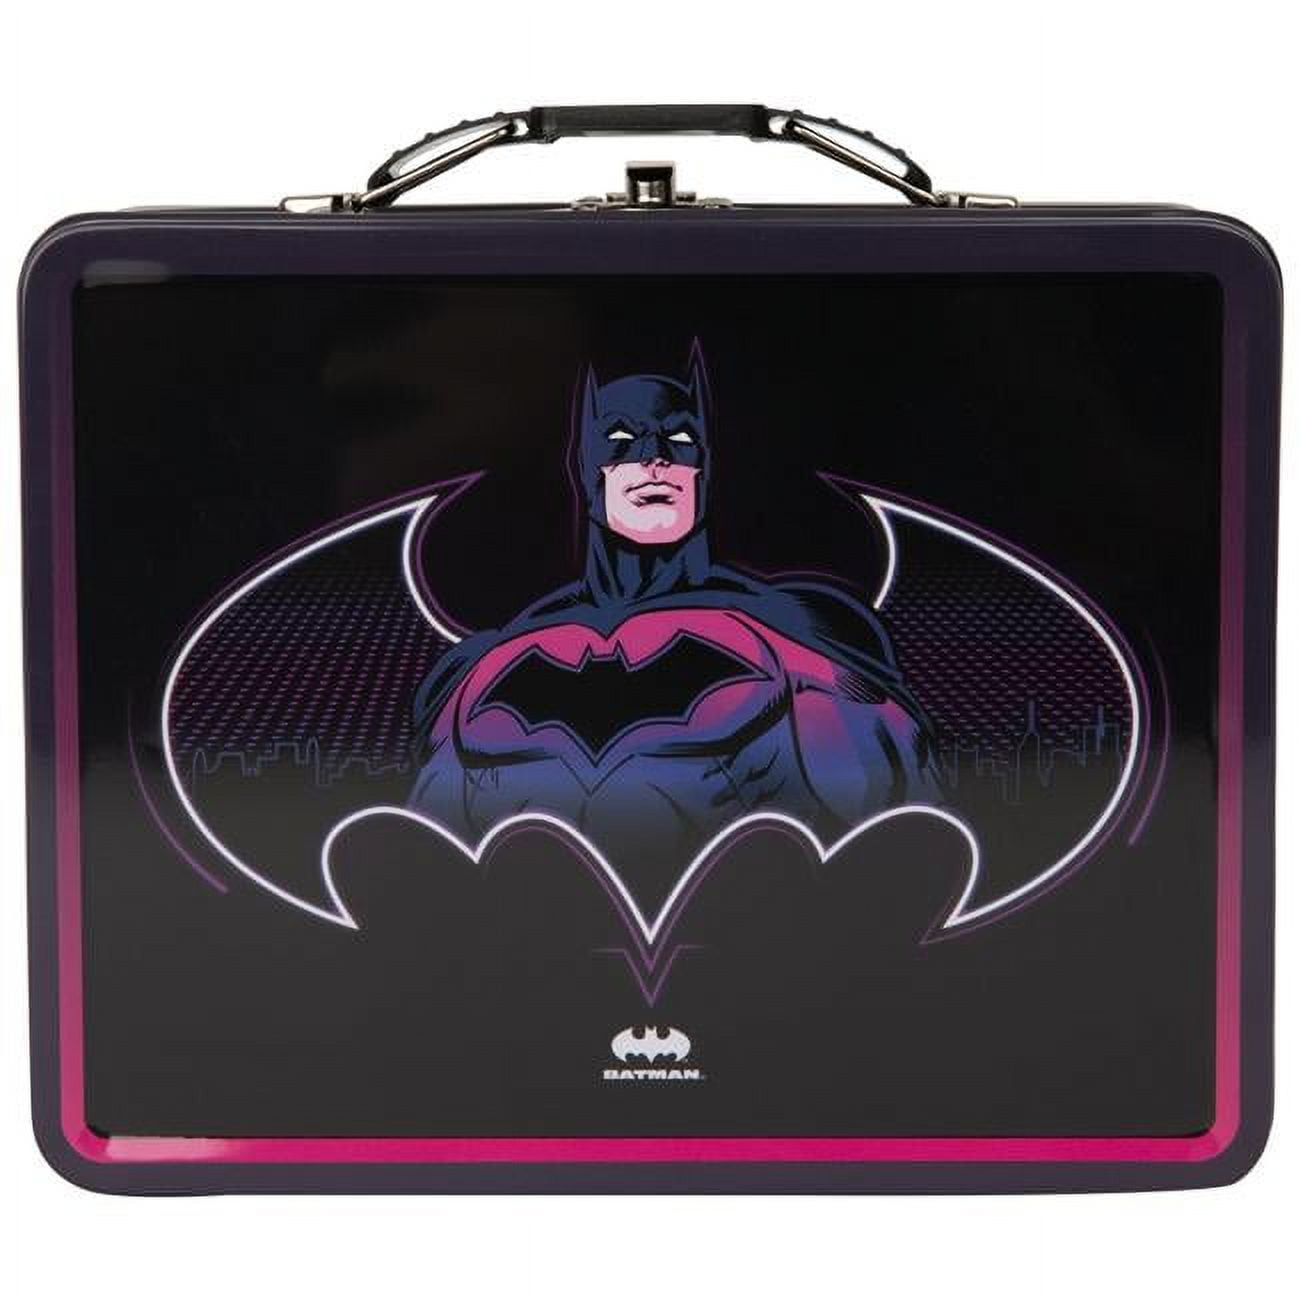 Etichette The Batman per borracce e lunch box - Stikets